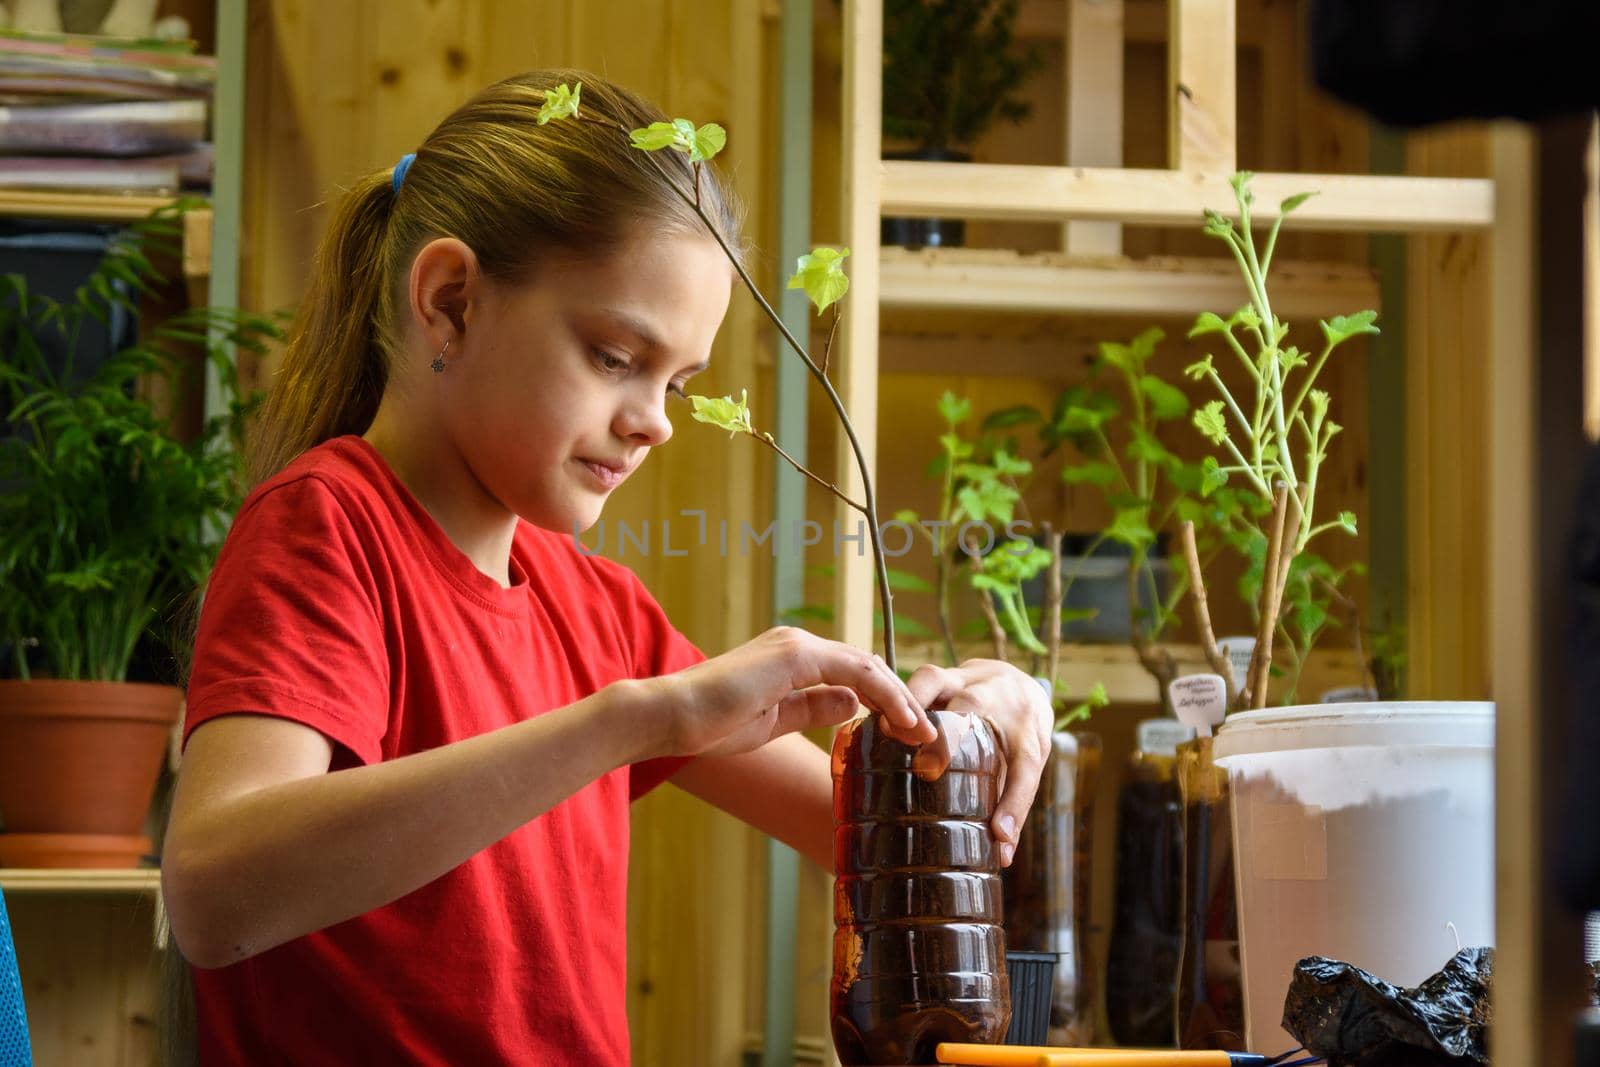 A girl plants seedlings of fruit plants in plastic bottles for the garden